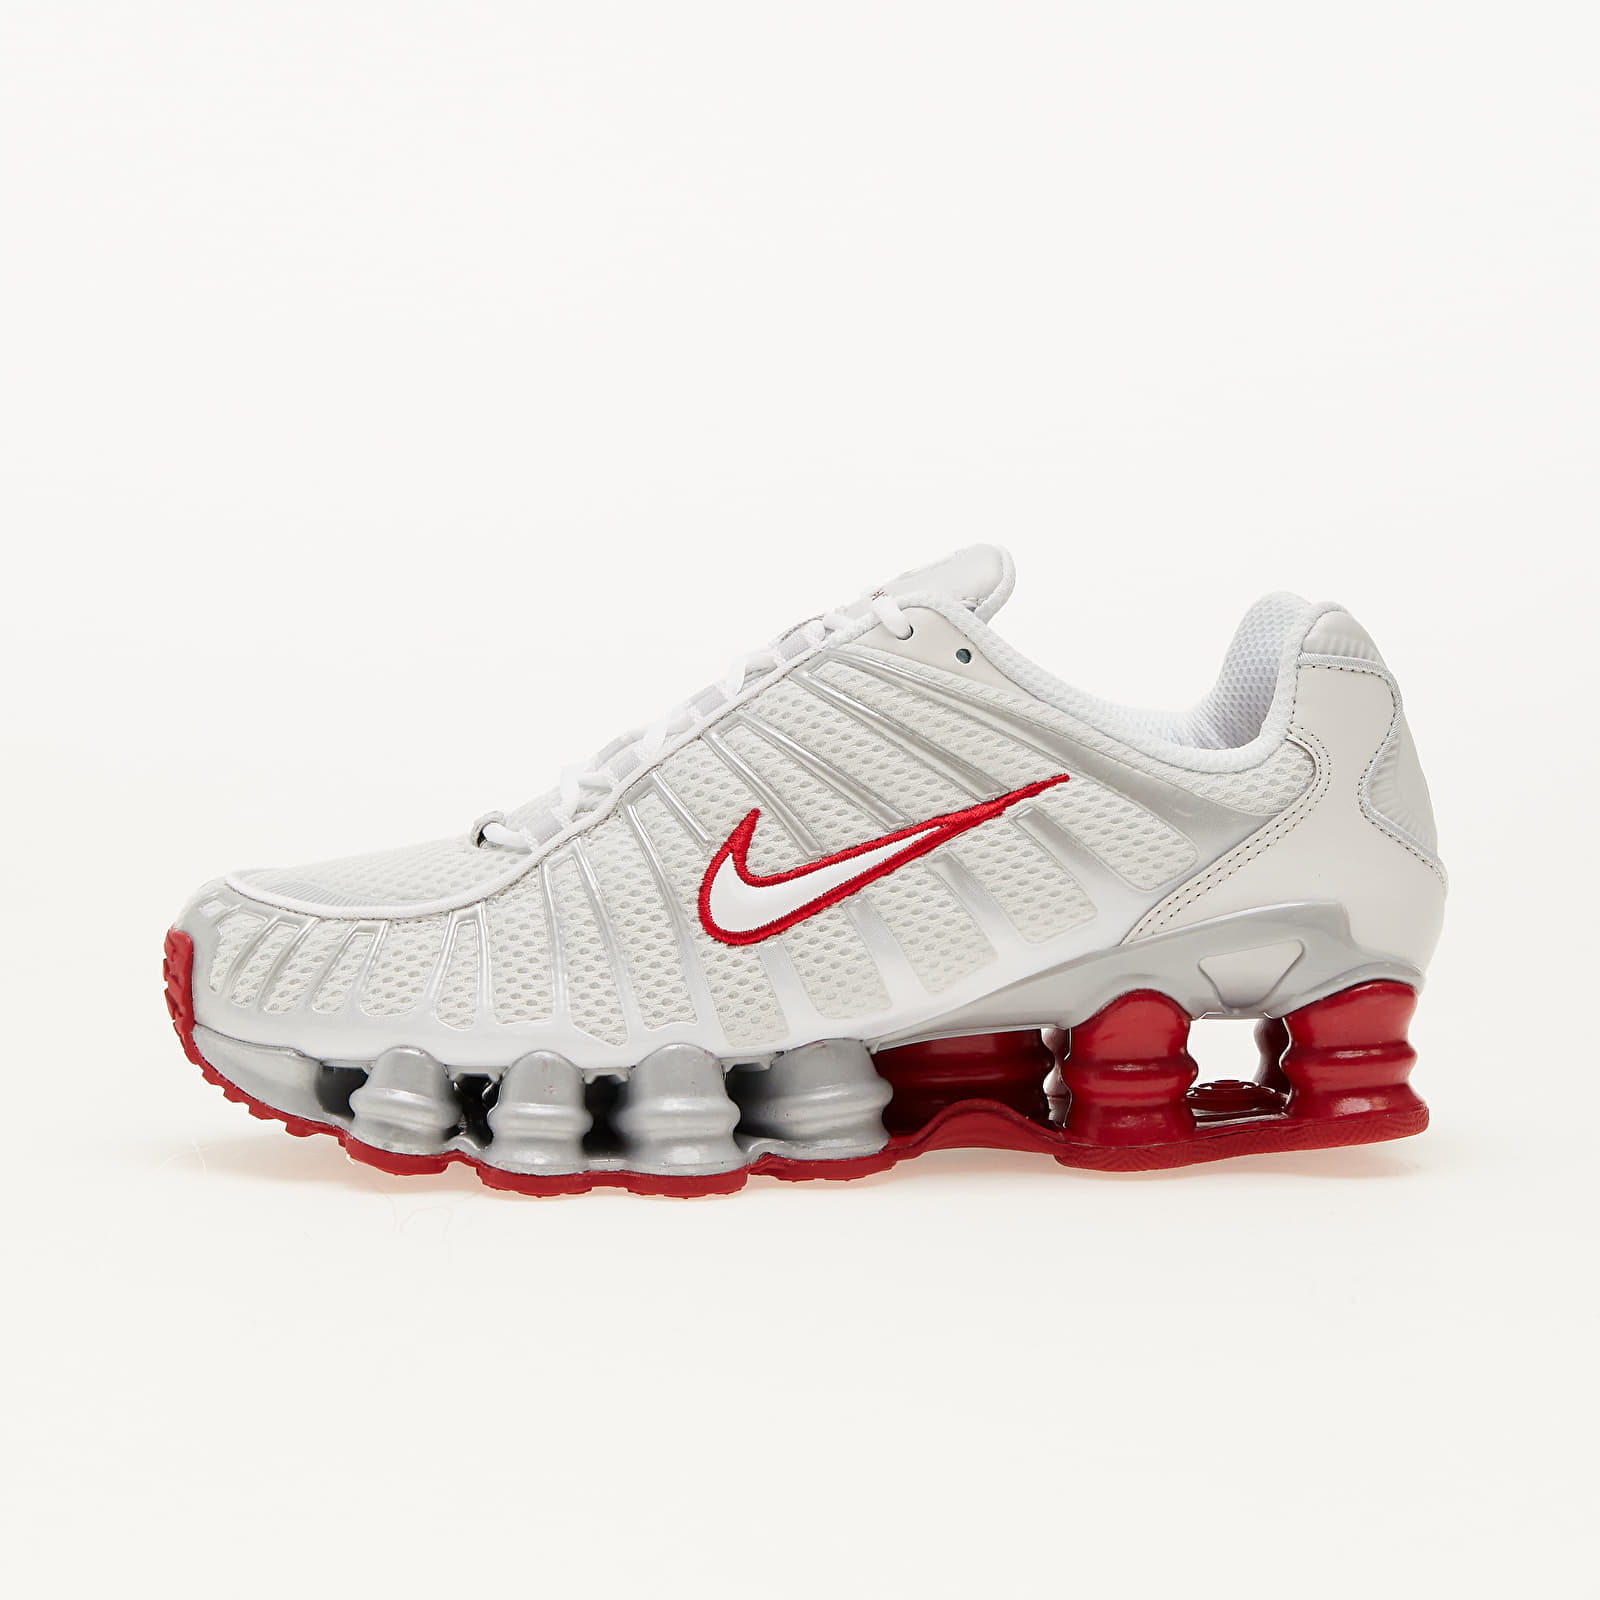 Nike - w shox tl platinum tint/ white-gym red